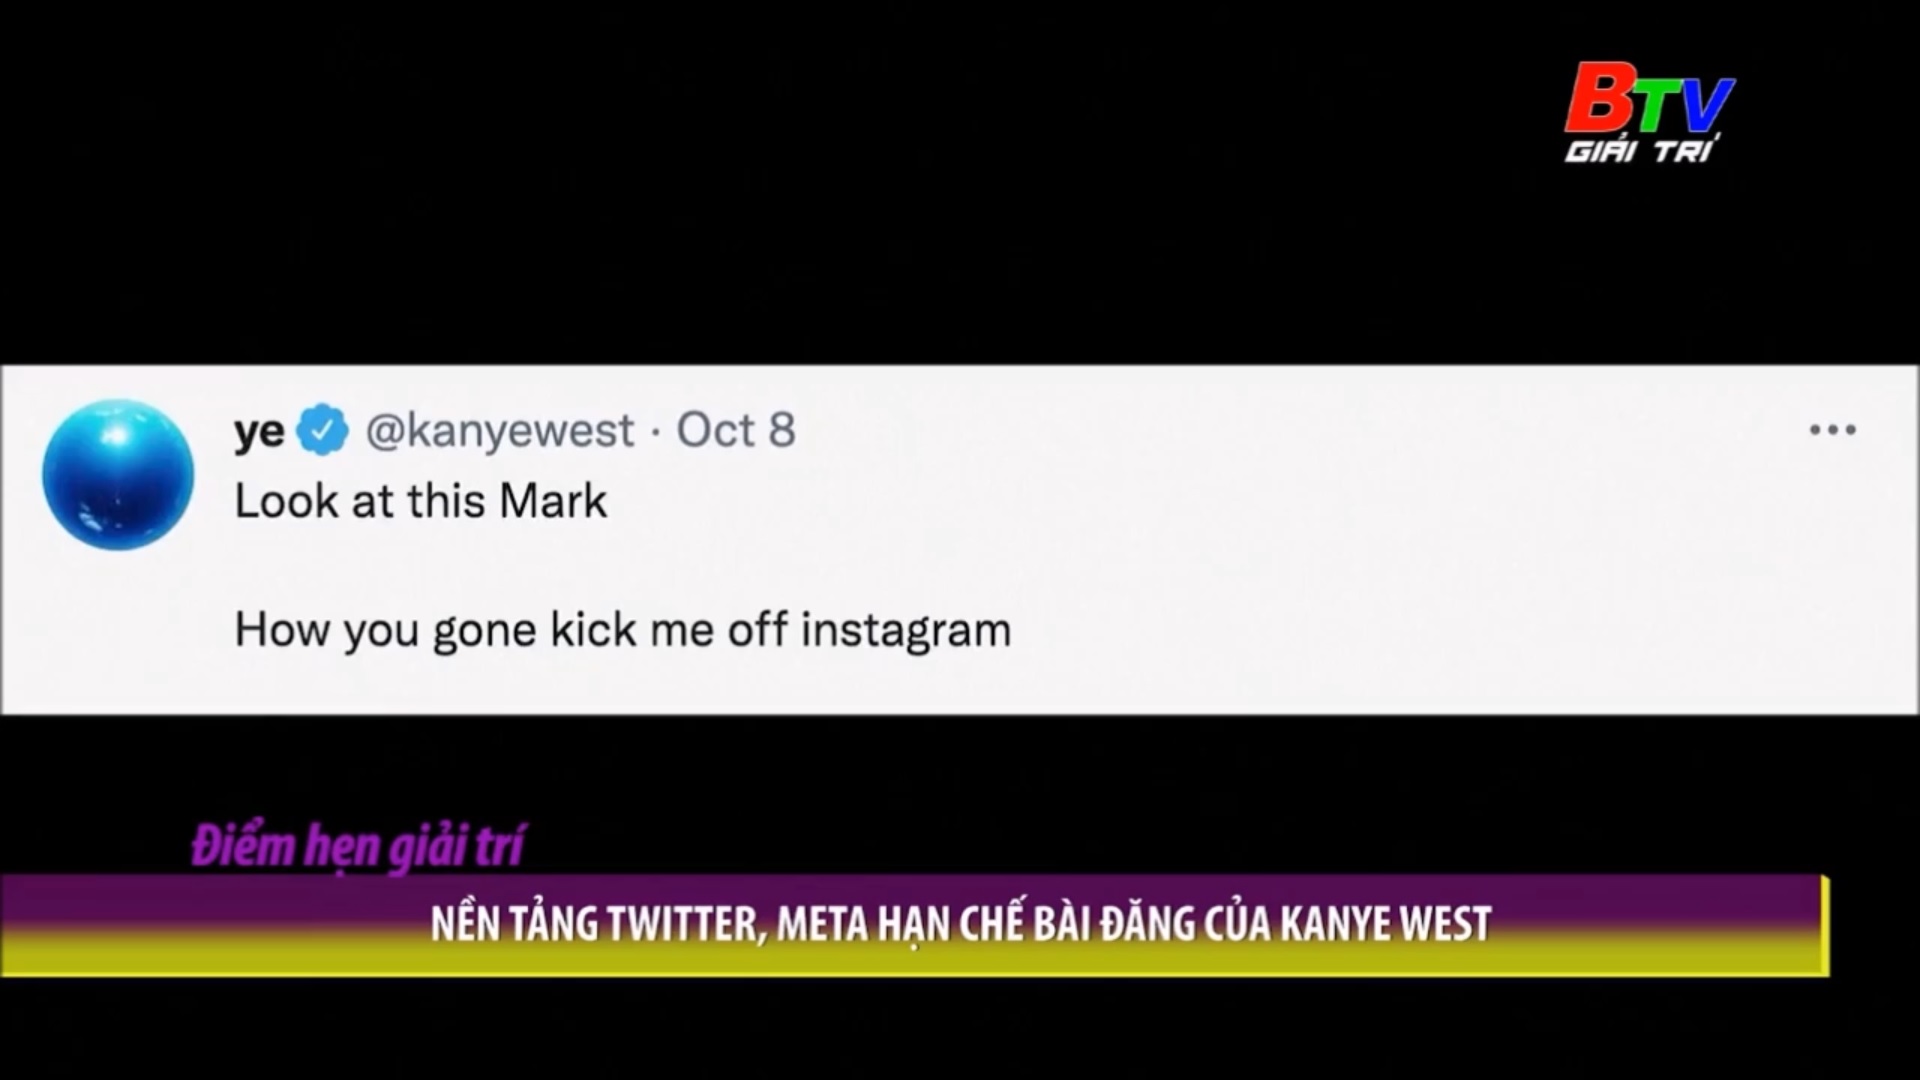 Nền tảng Titter, Meta hạn chế bài đăng của Kanye West